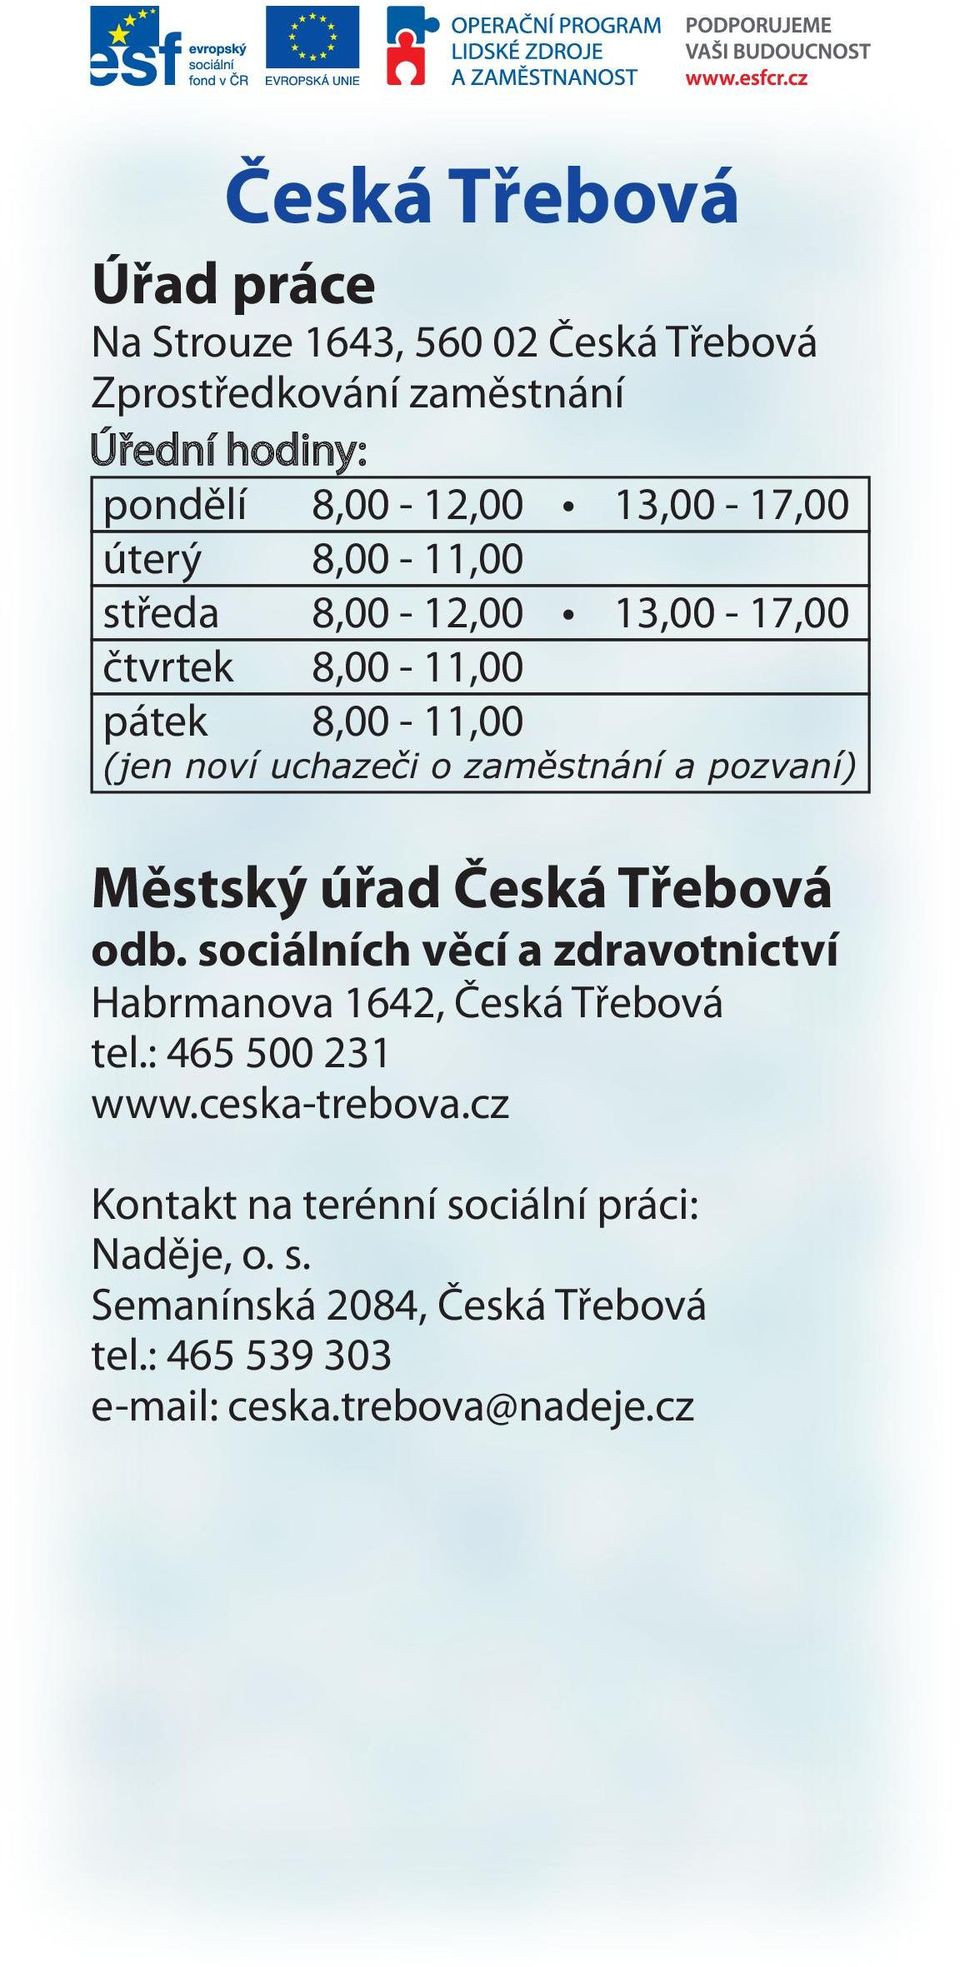 Česká Třebová odb. sociálních věcí a zdravotnictví Habrmanova 1642, Česká Třebová tel.: 465 500 231 www.ceska-trebova.